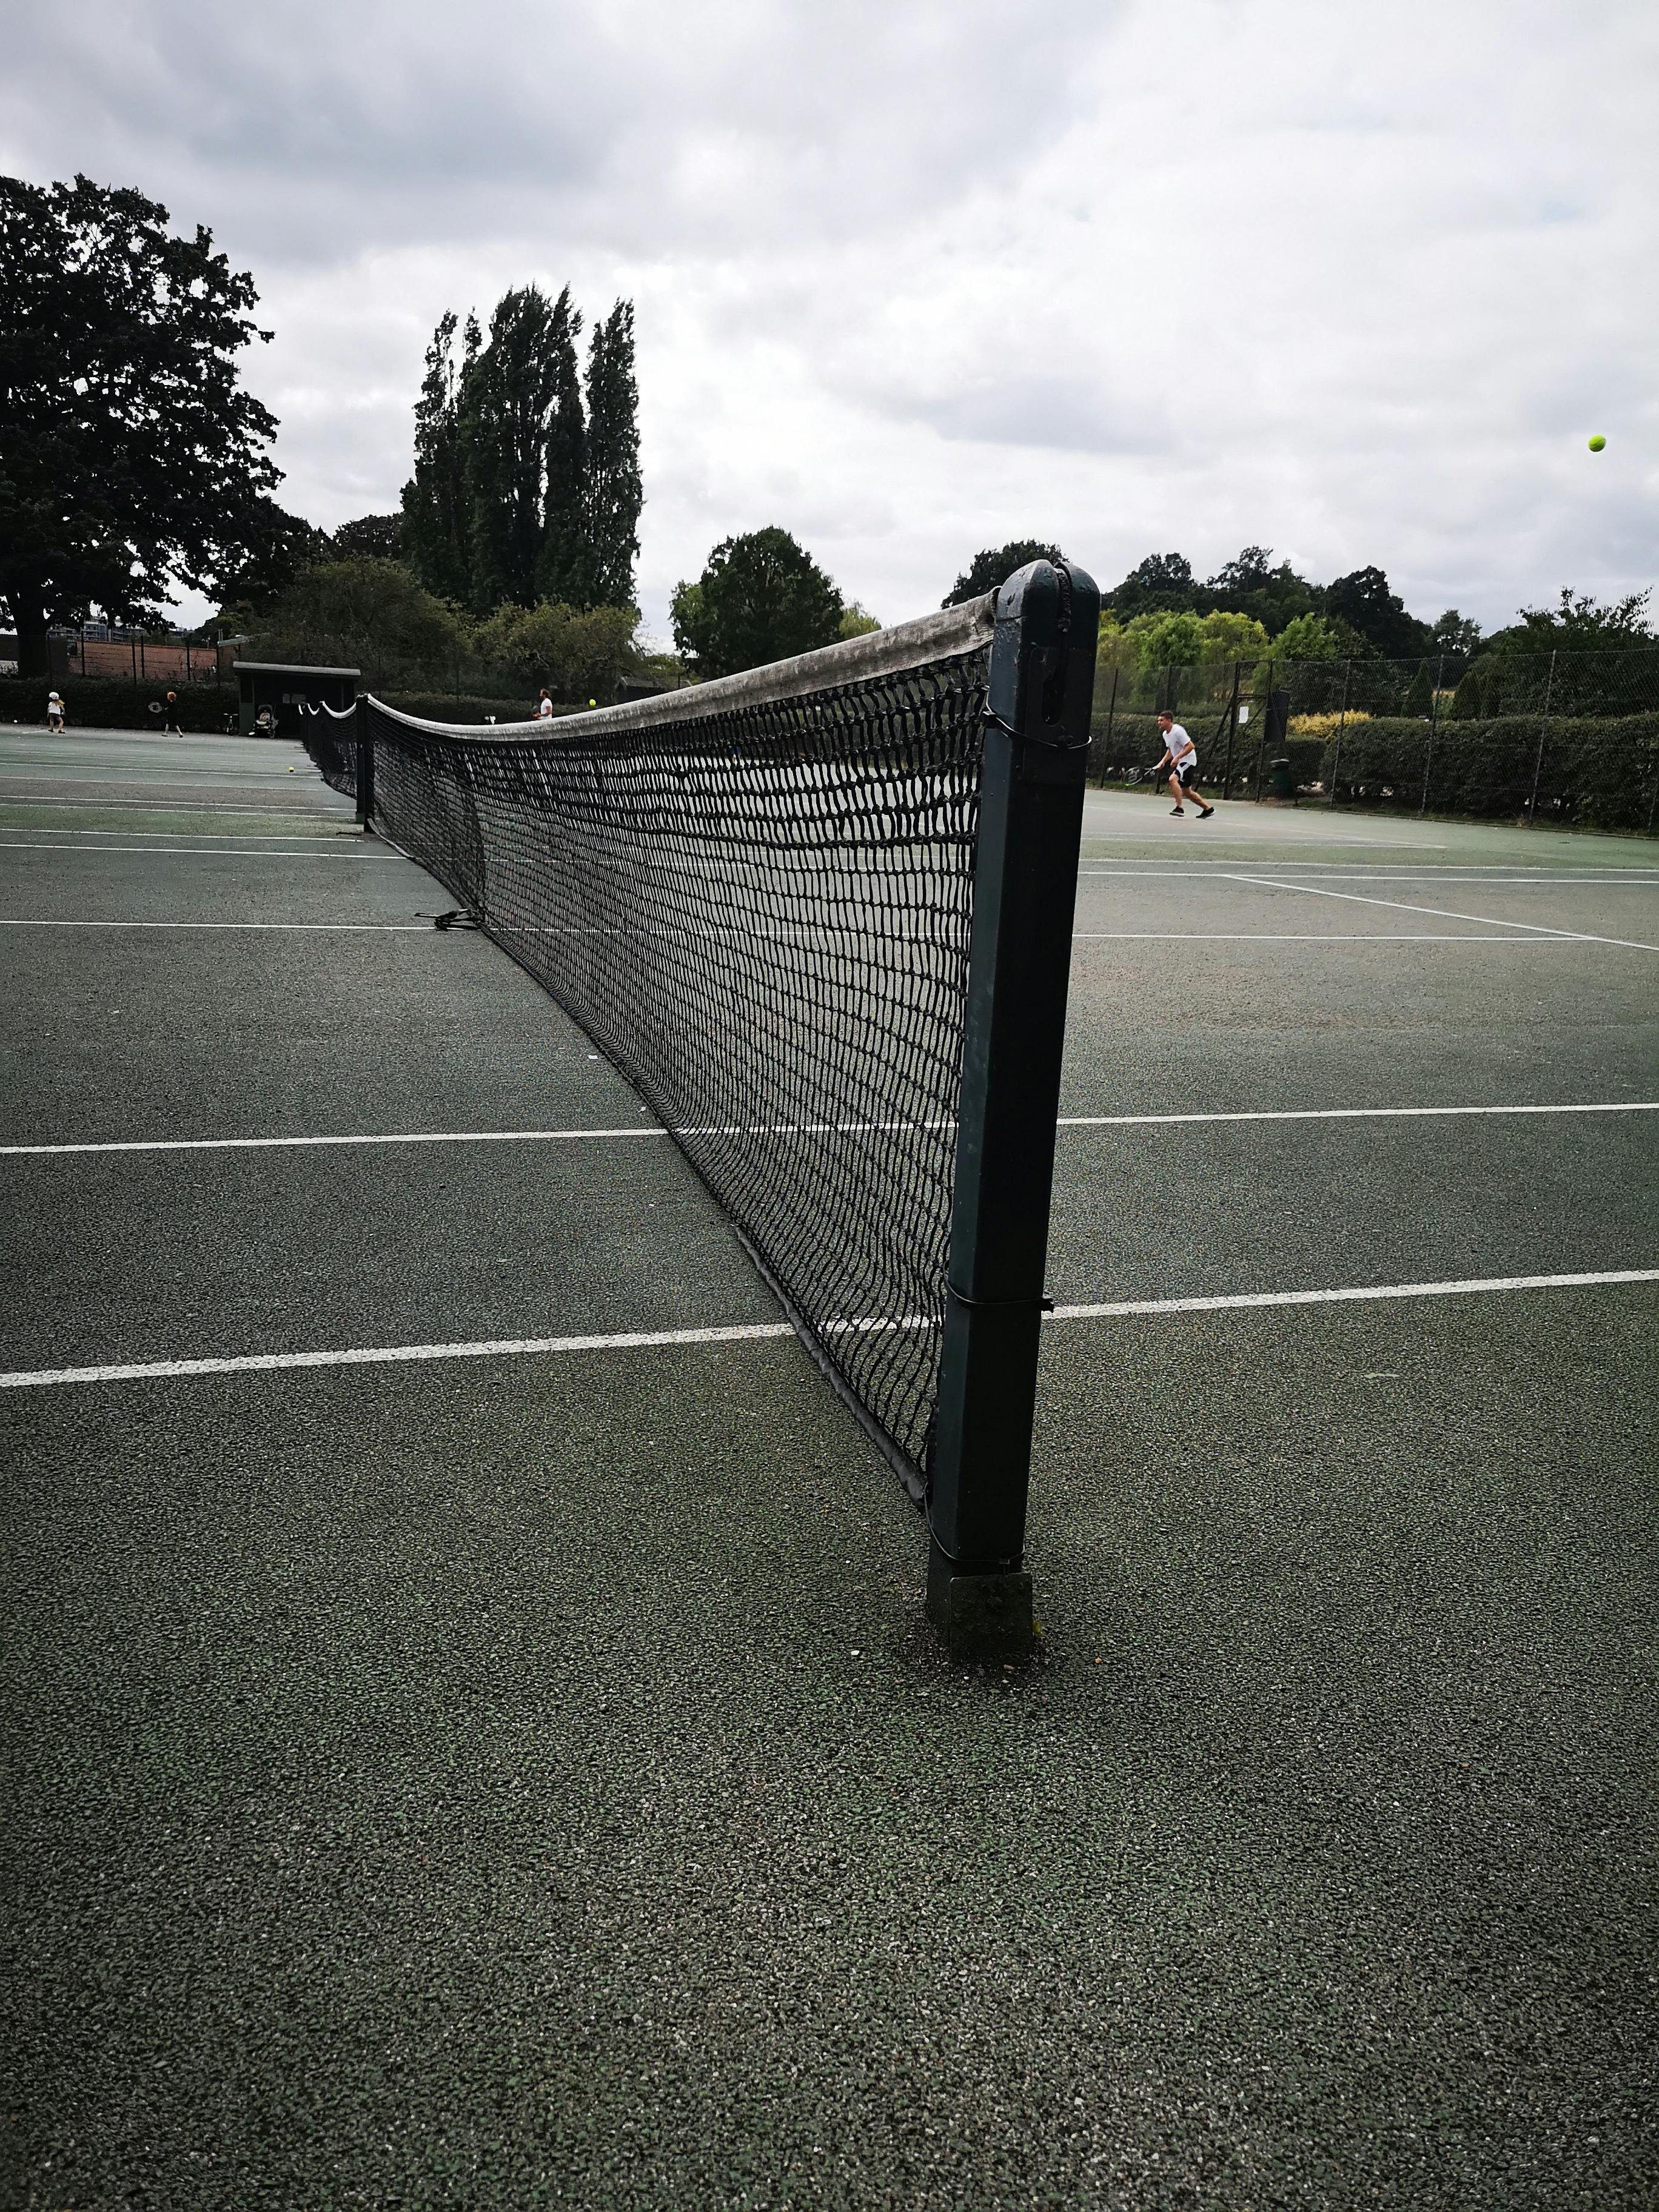 Free stock photo of Parliament Hill Fields Highgate, tennis, tennis court